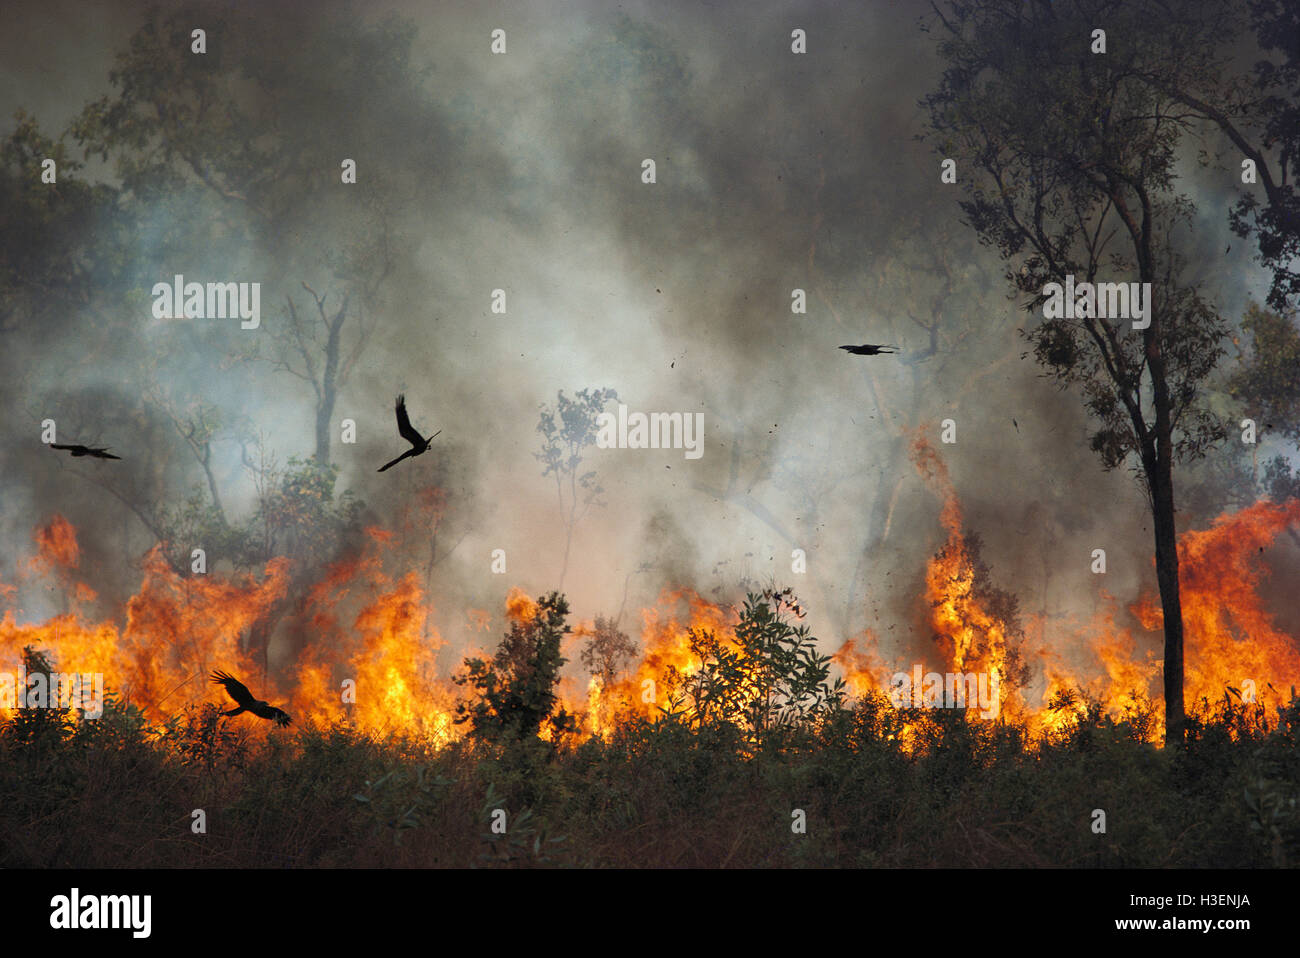 Milanos negros (Milvus migrans), cazando insectos durante dichas quemas. Parque Nacional Kakadu, el Territorio del Norte, Australia Foto de stock